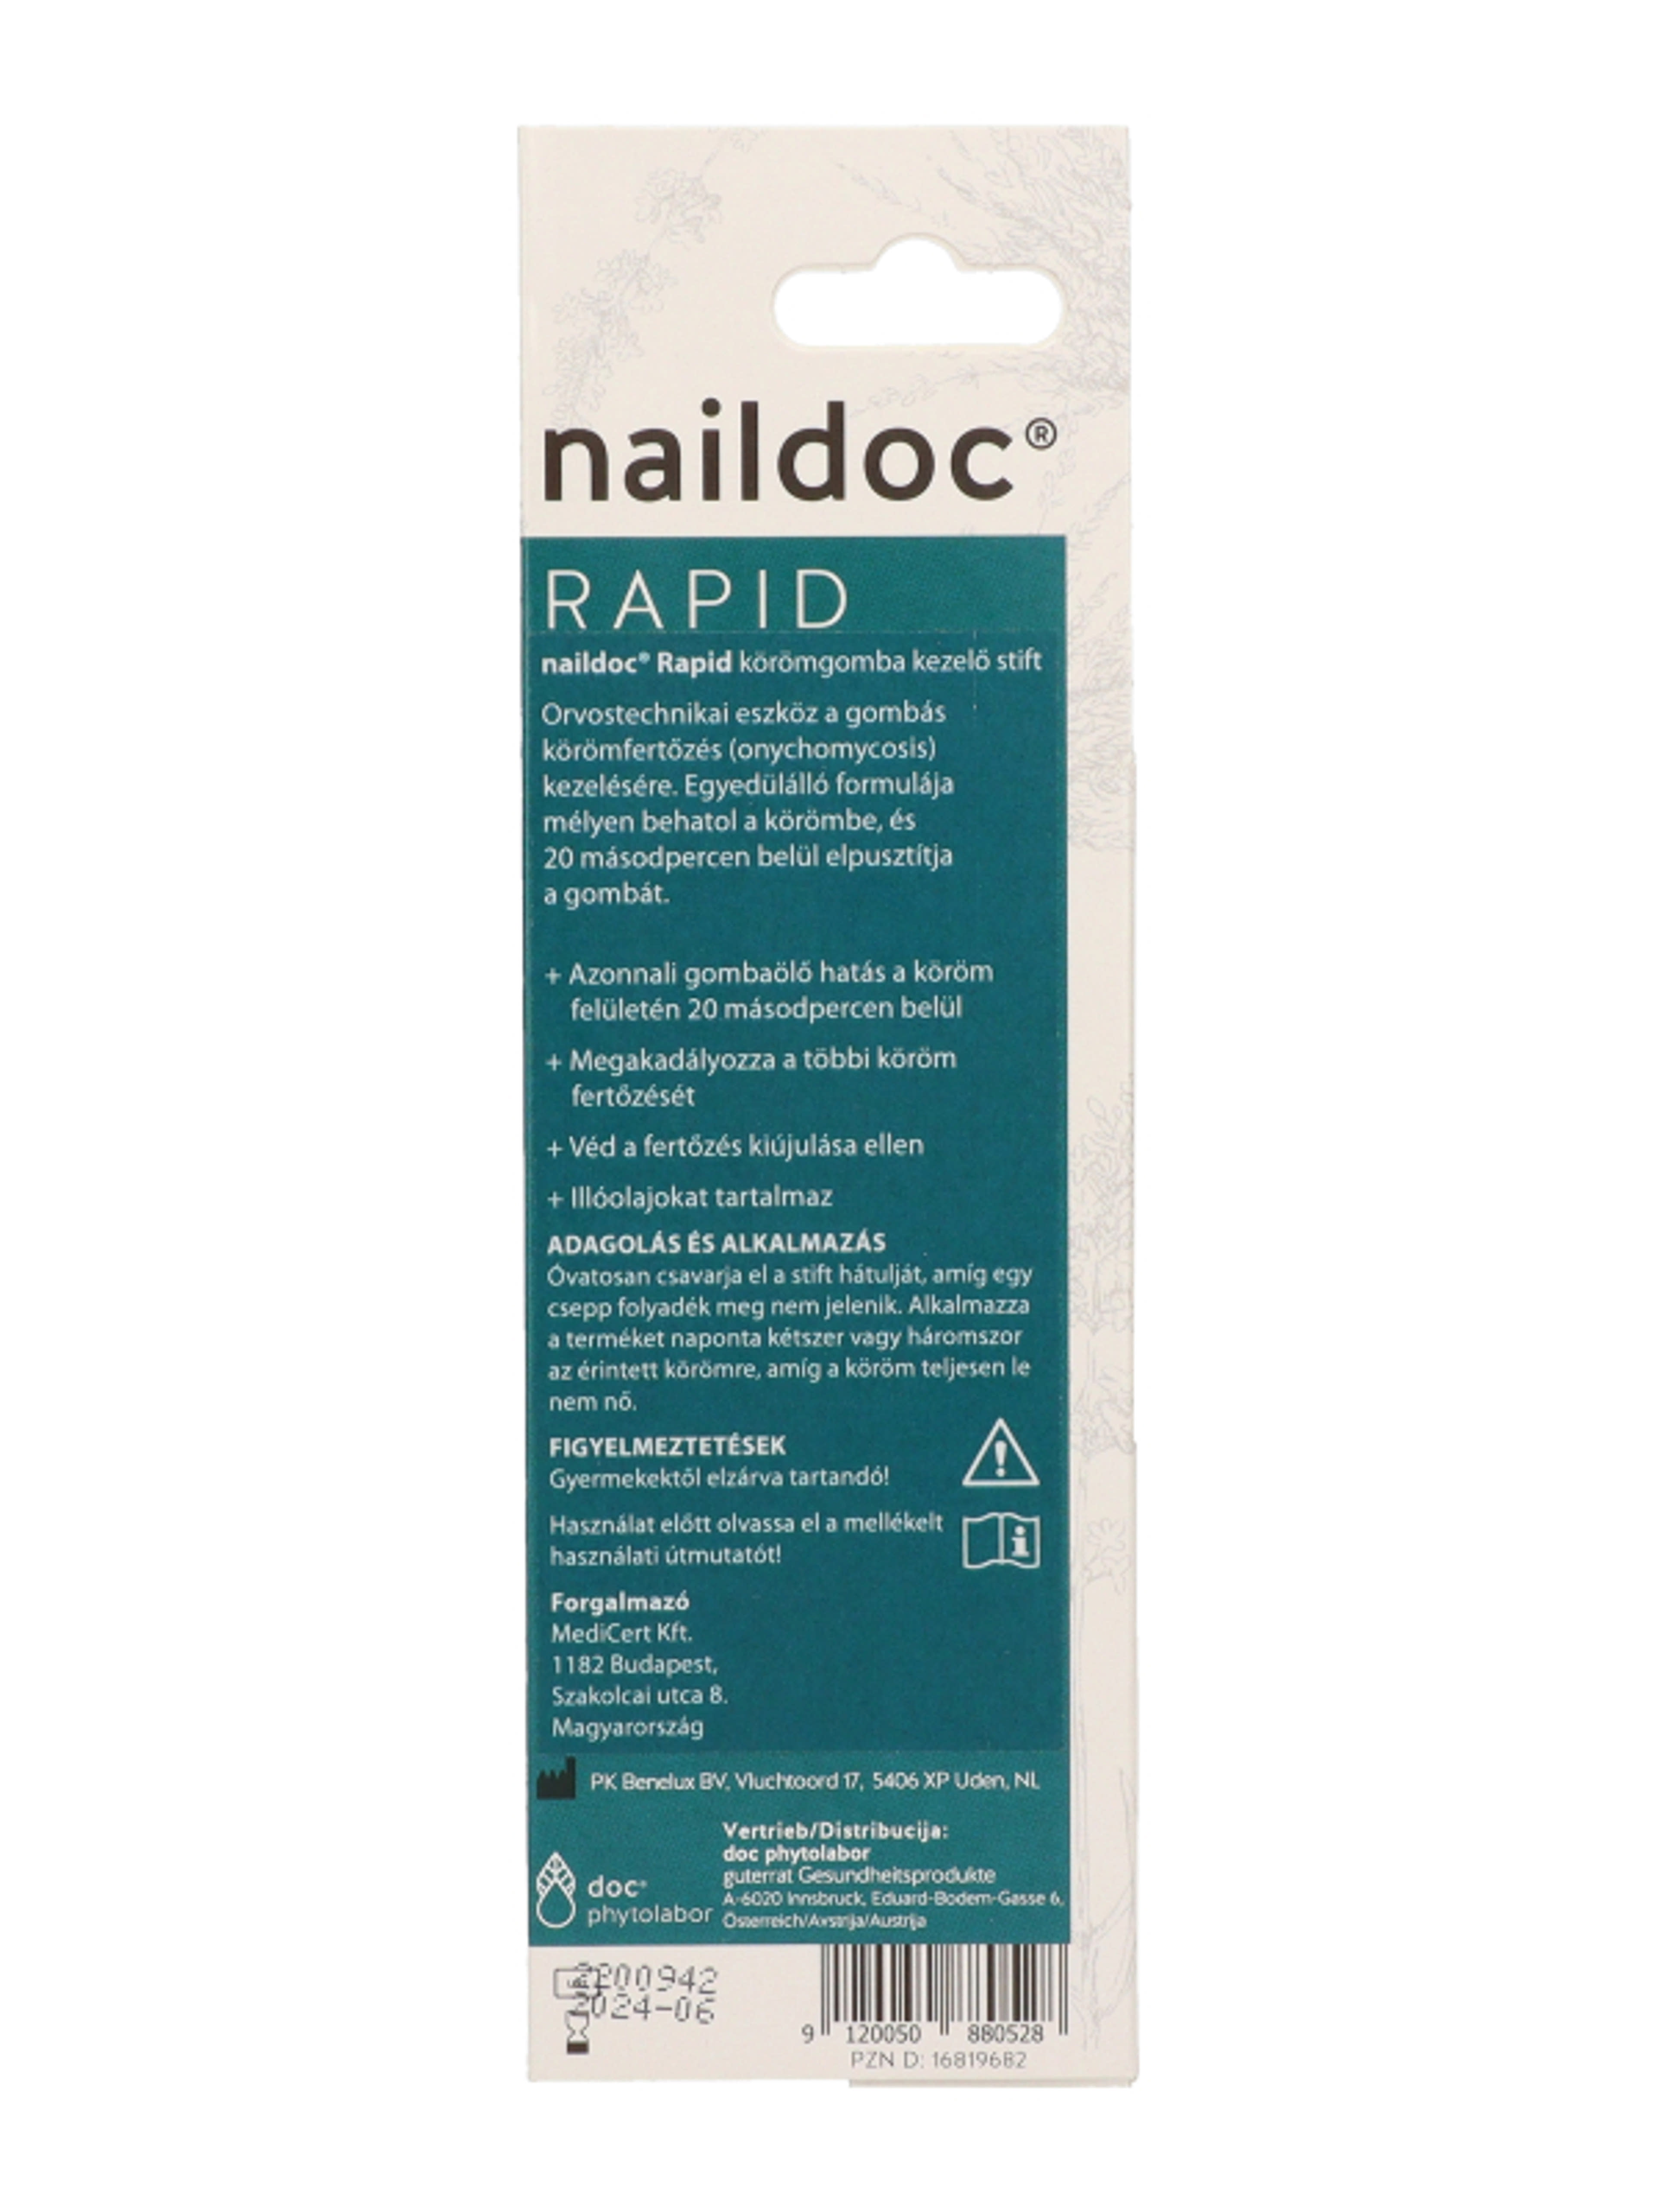 Naildoc Rapid stift körömgomba kezelésére - 1 db-4